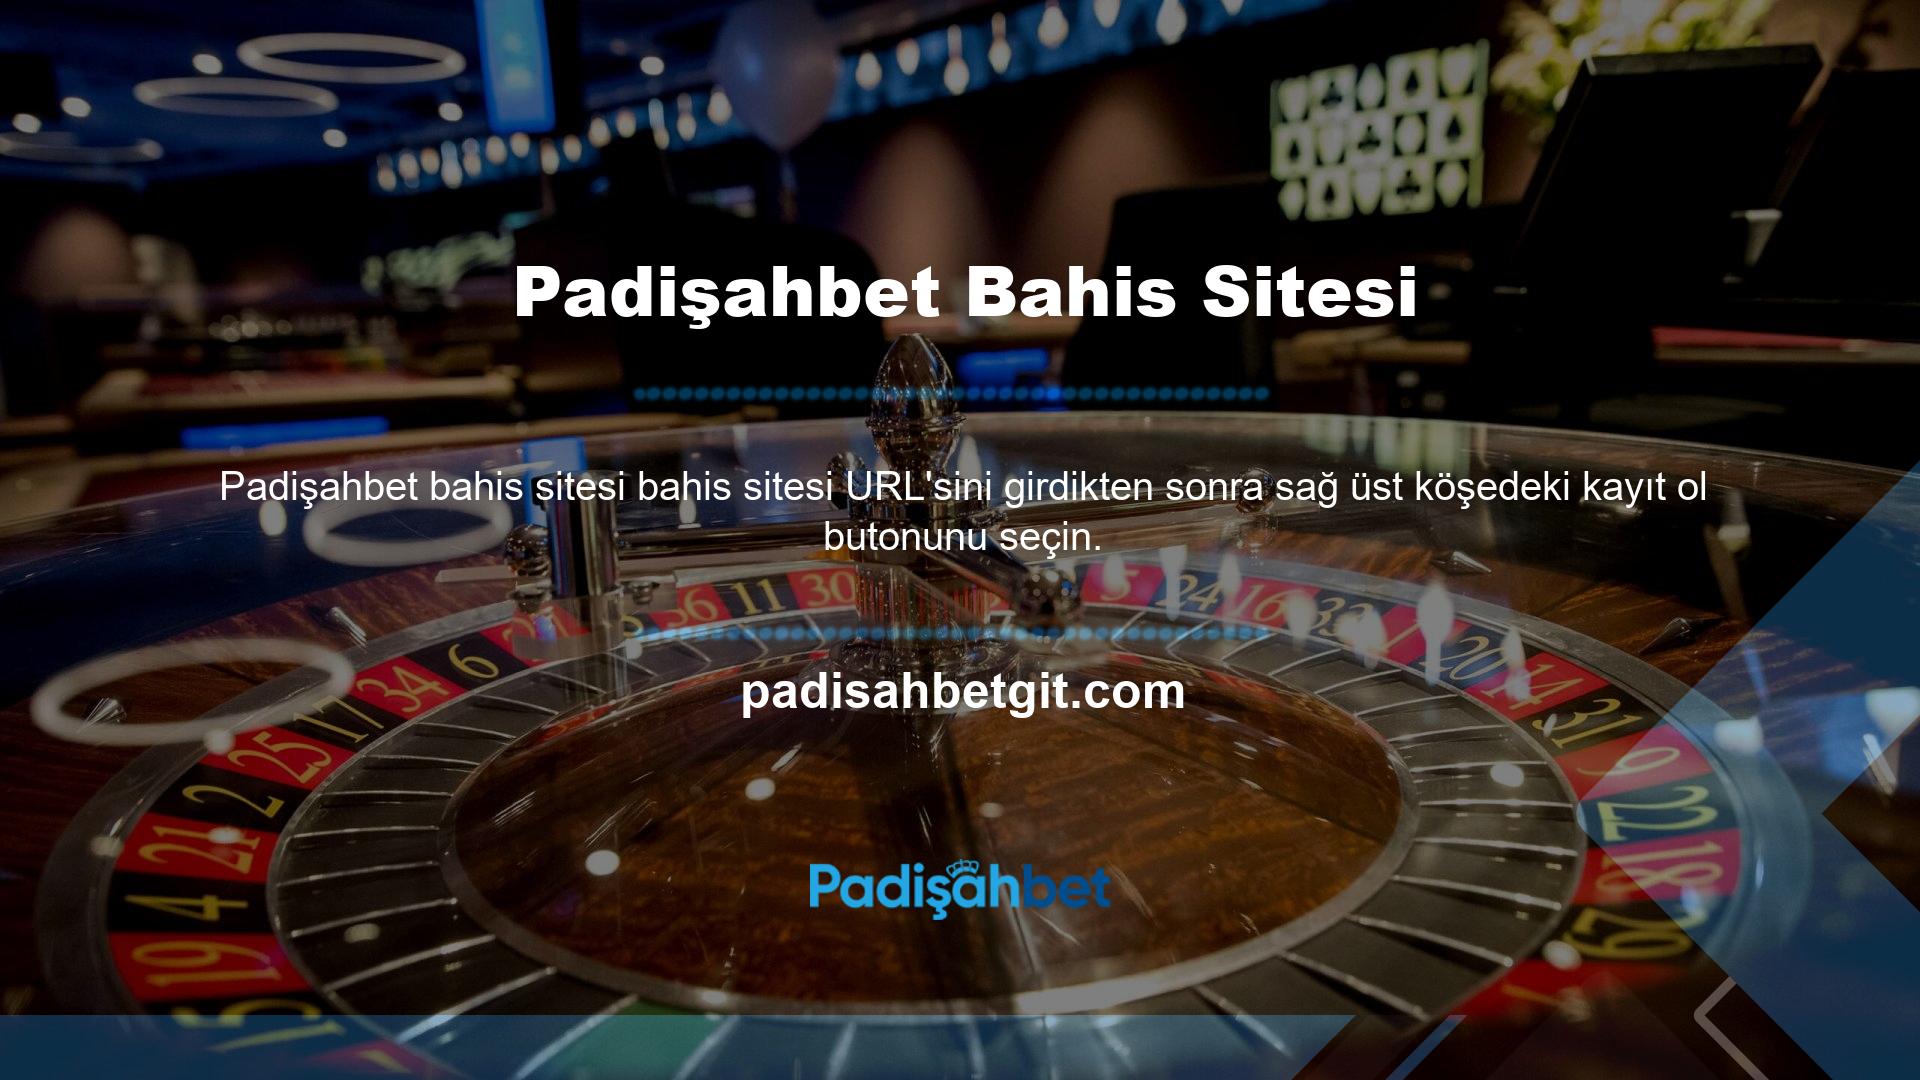 Sayfaya doğru bilgileri girerek bu çevrimiçi casino platformundaki bonus teklifinizi etkinleştirebilirsiniz